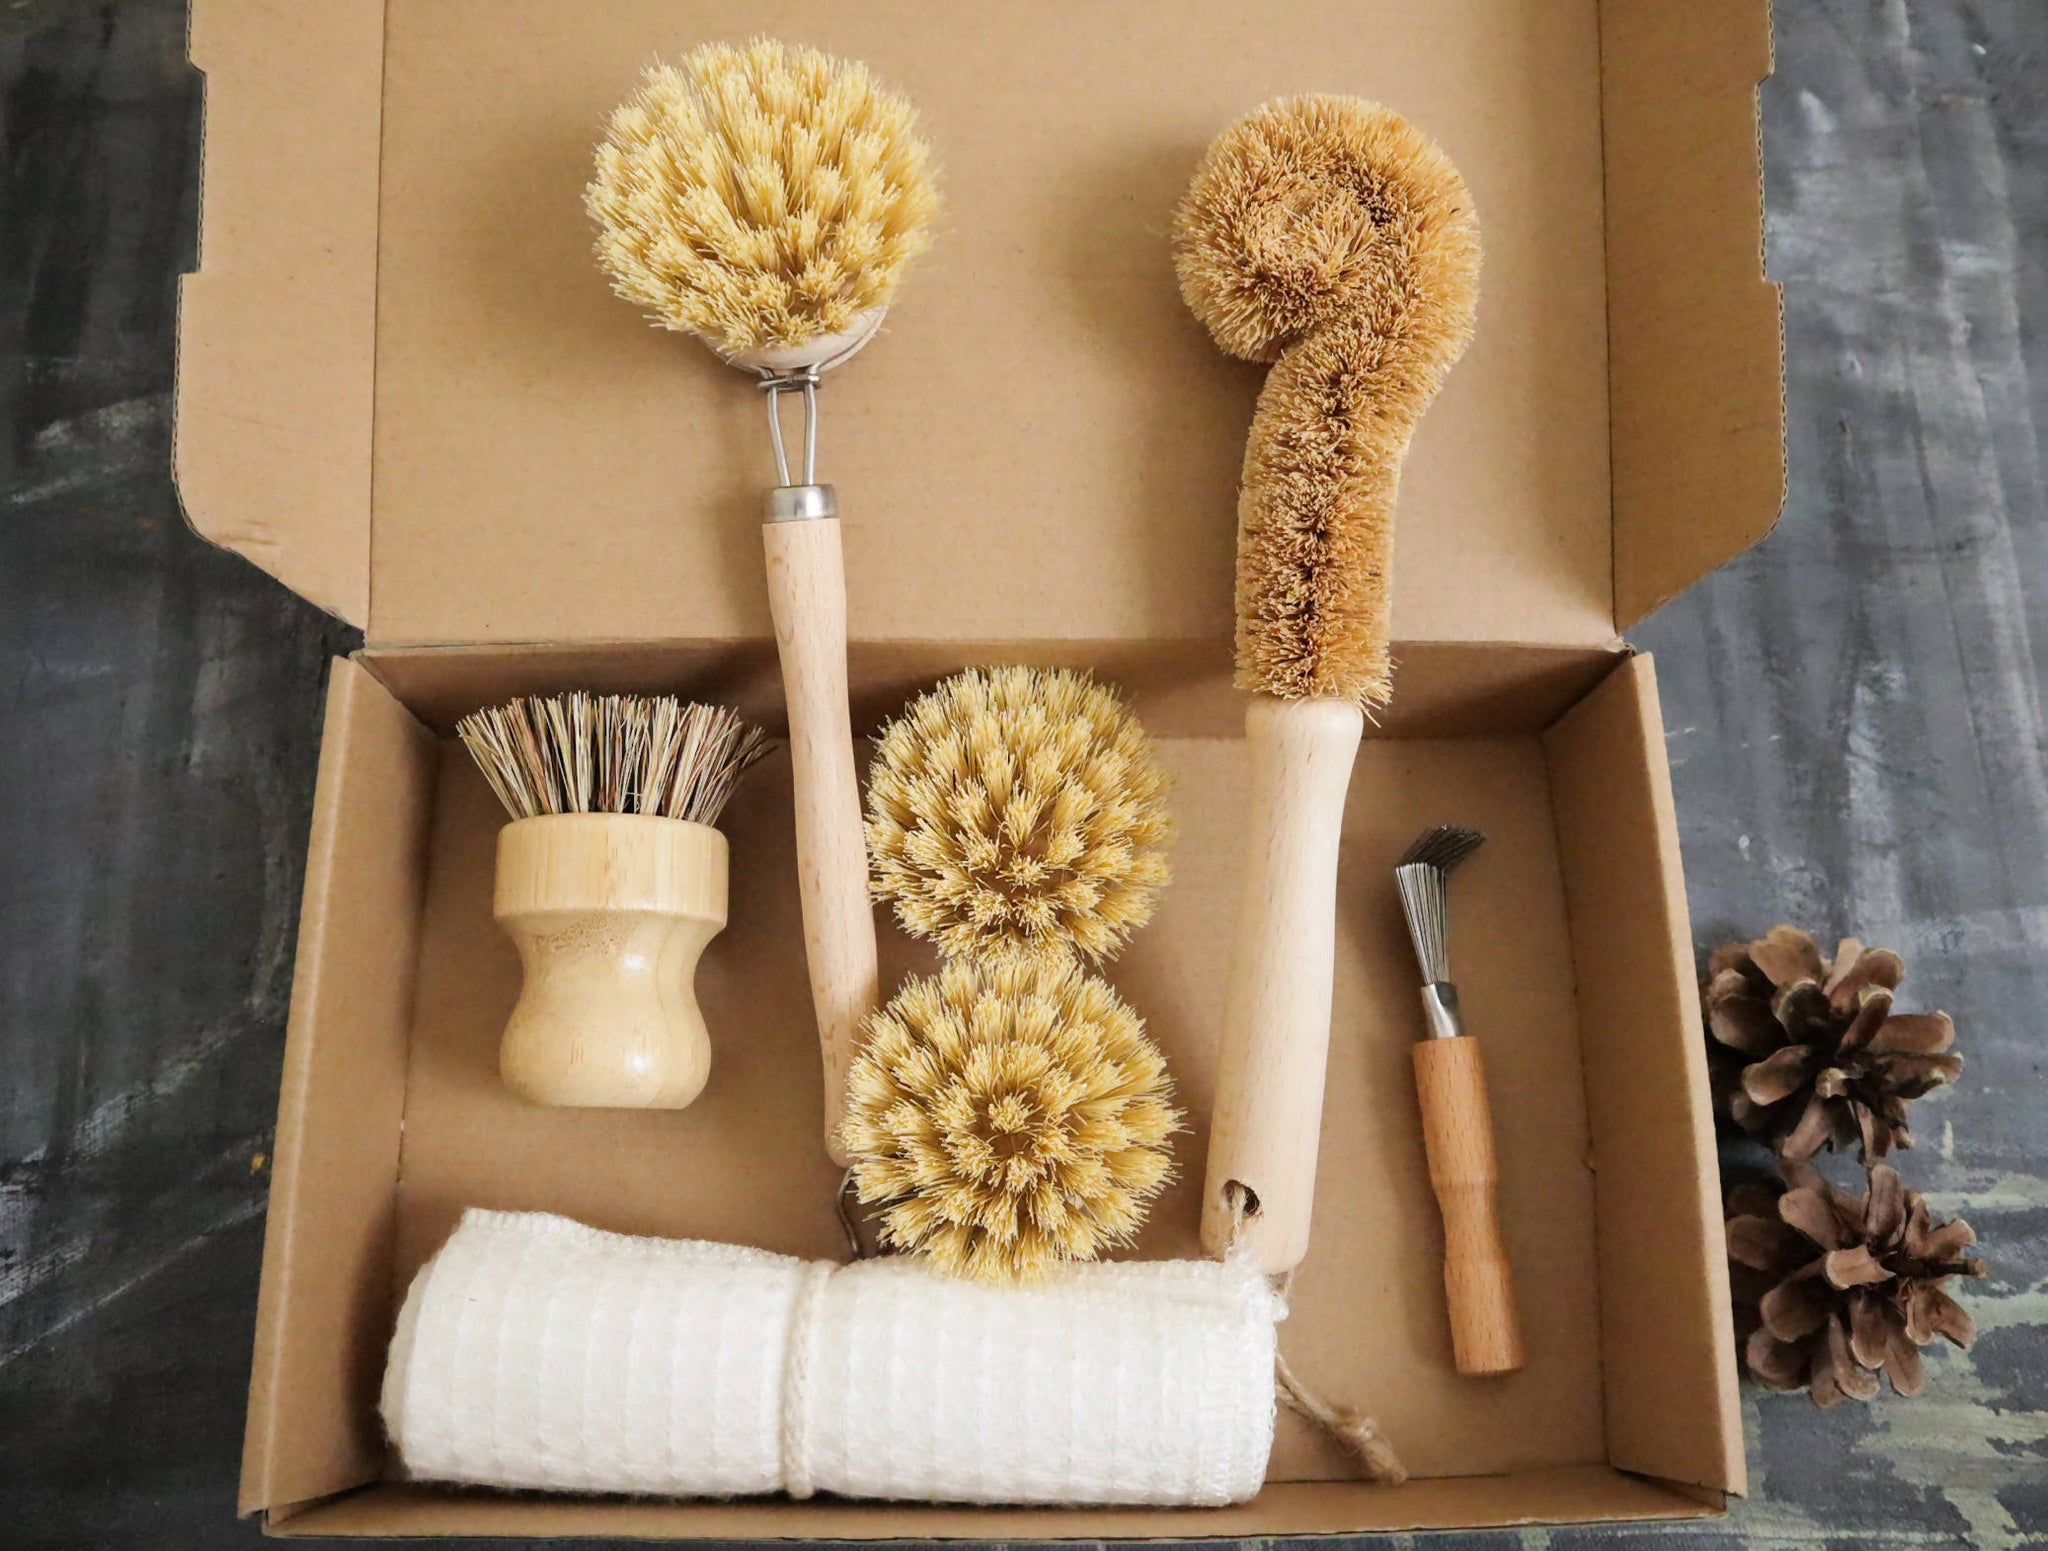 Zero Waste Kitchen Brush Set - Ultimate Kit